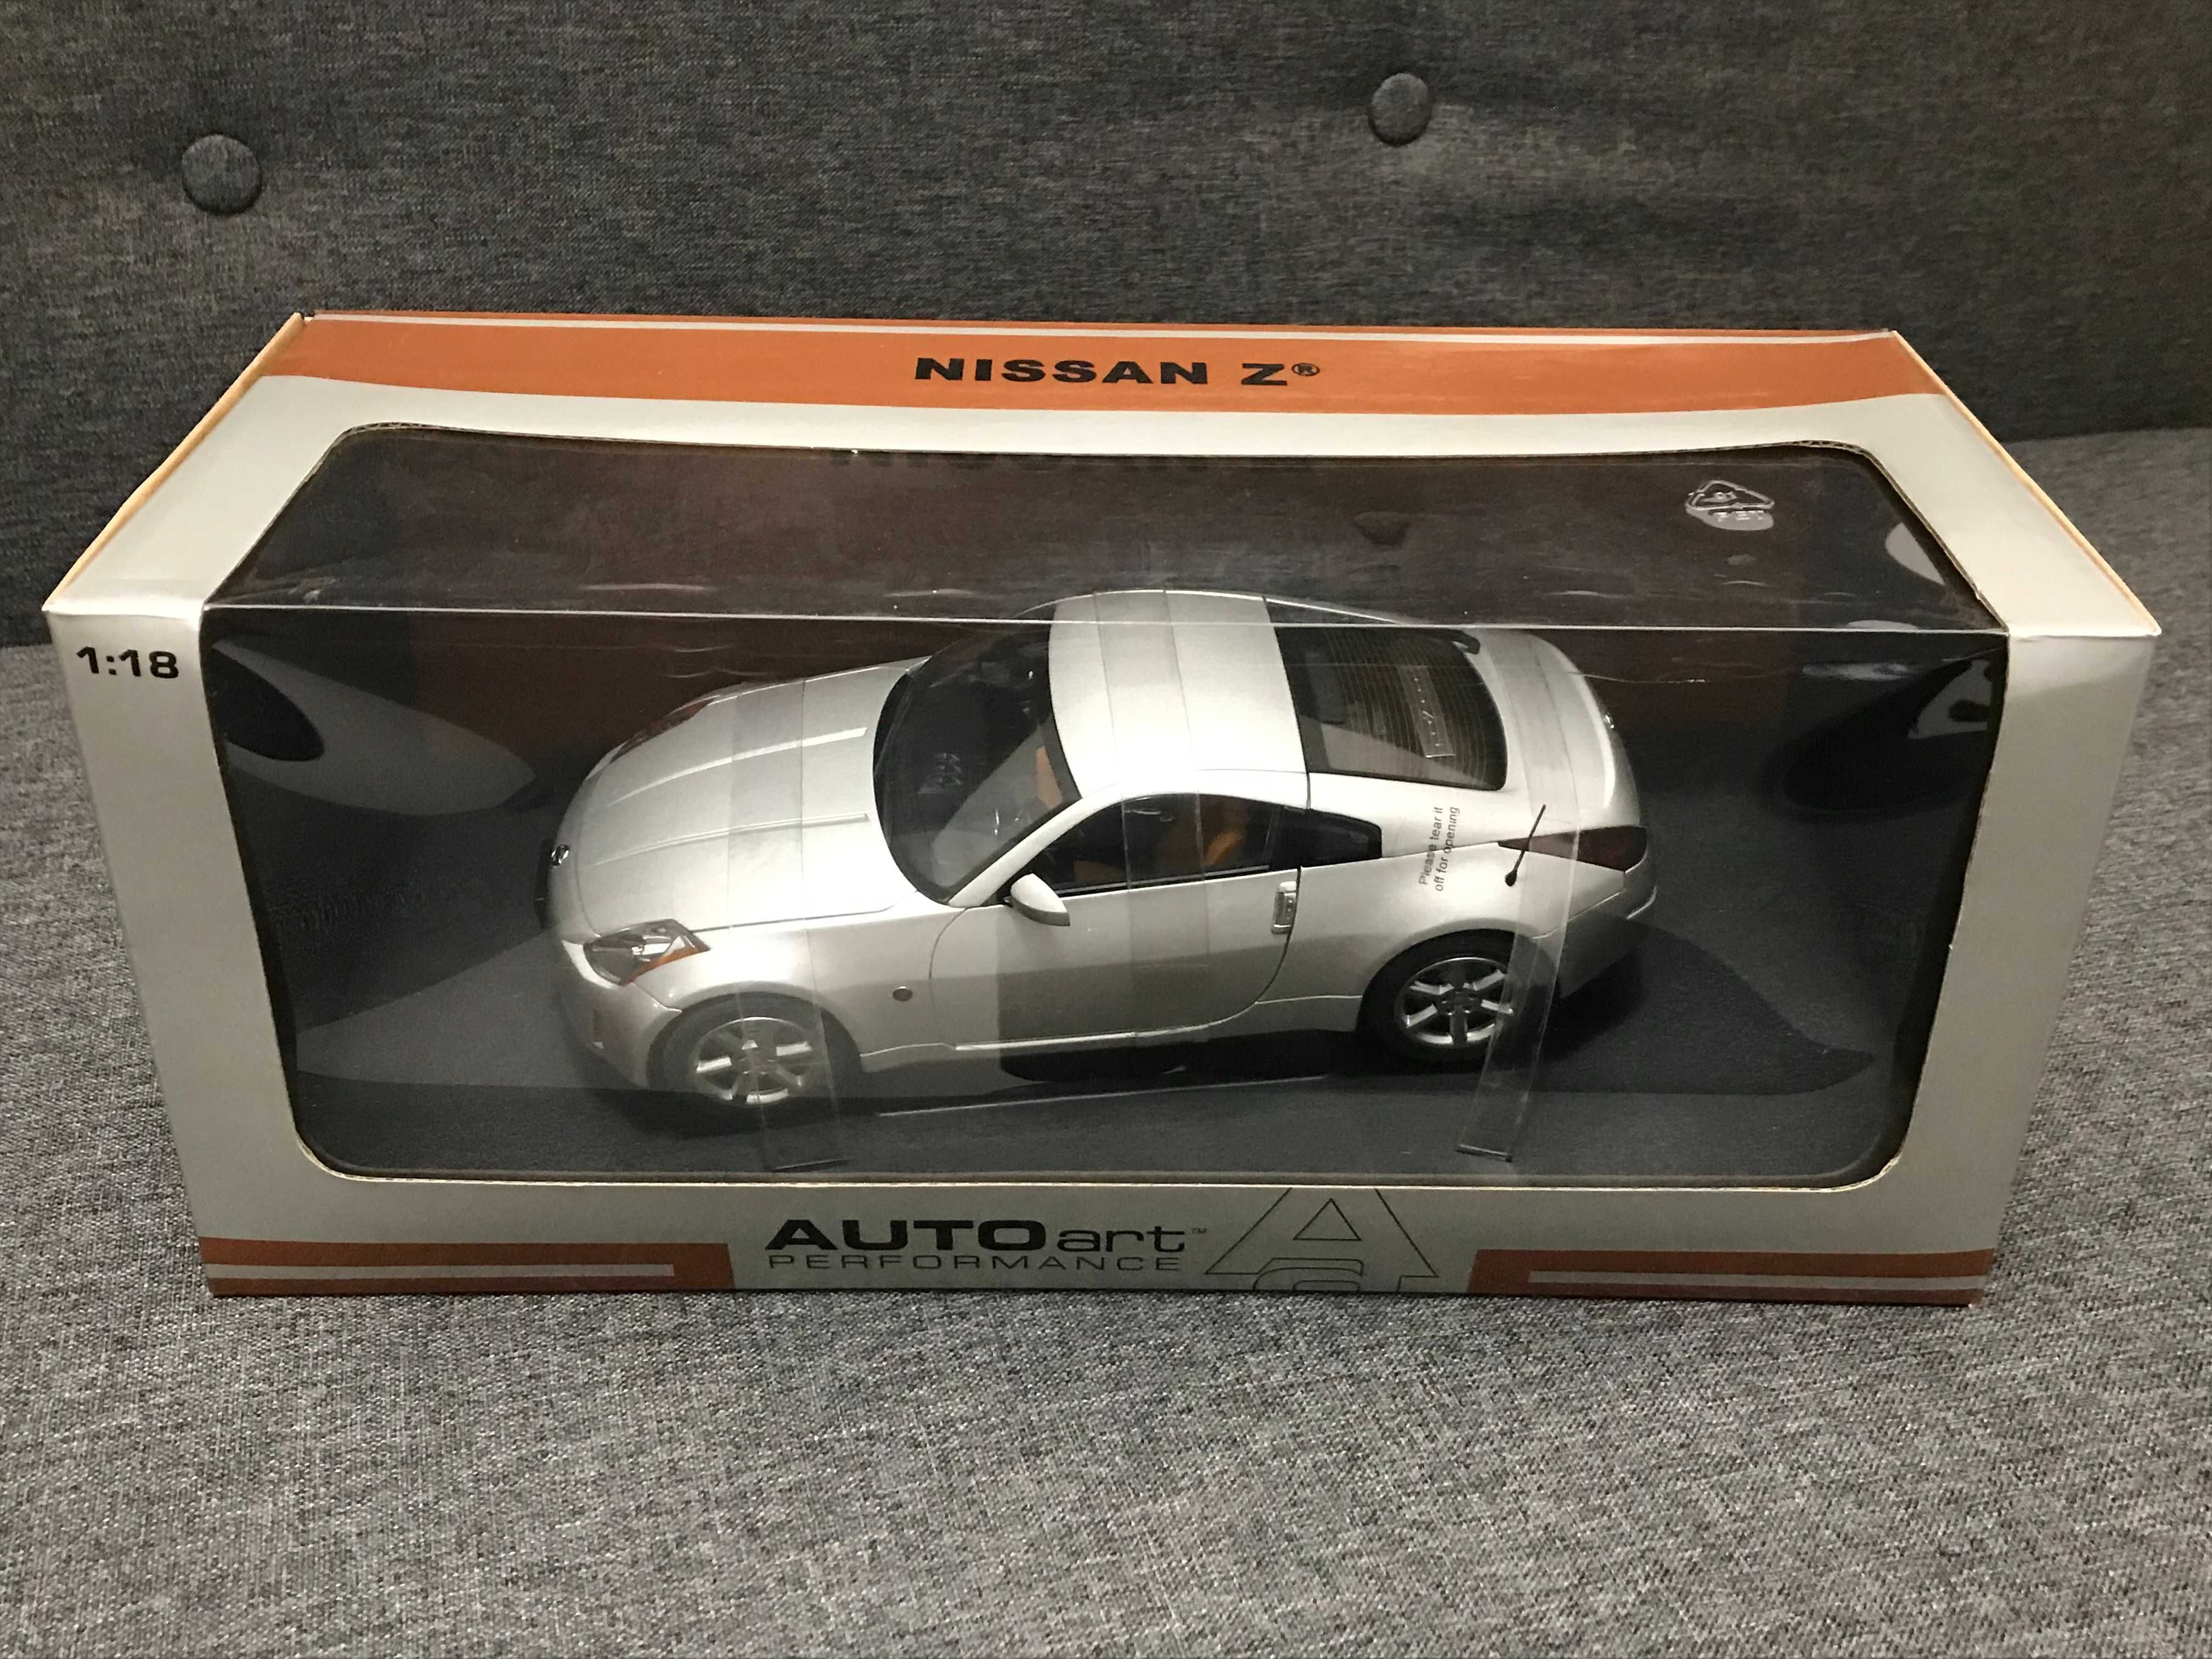 1/18 Autoart model Nissan 350z Fairlady Z